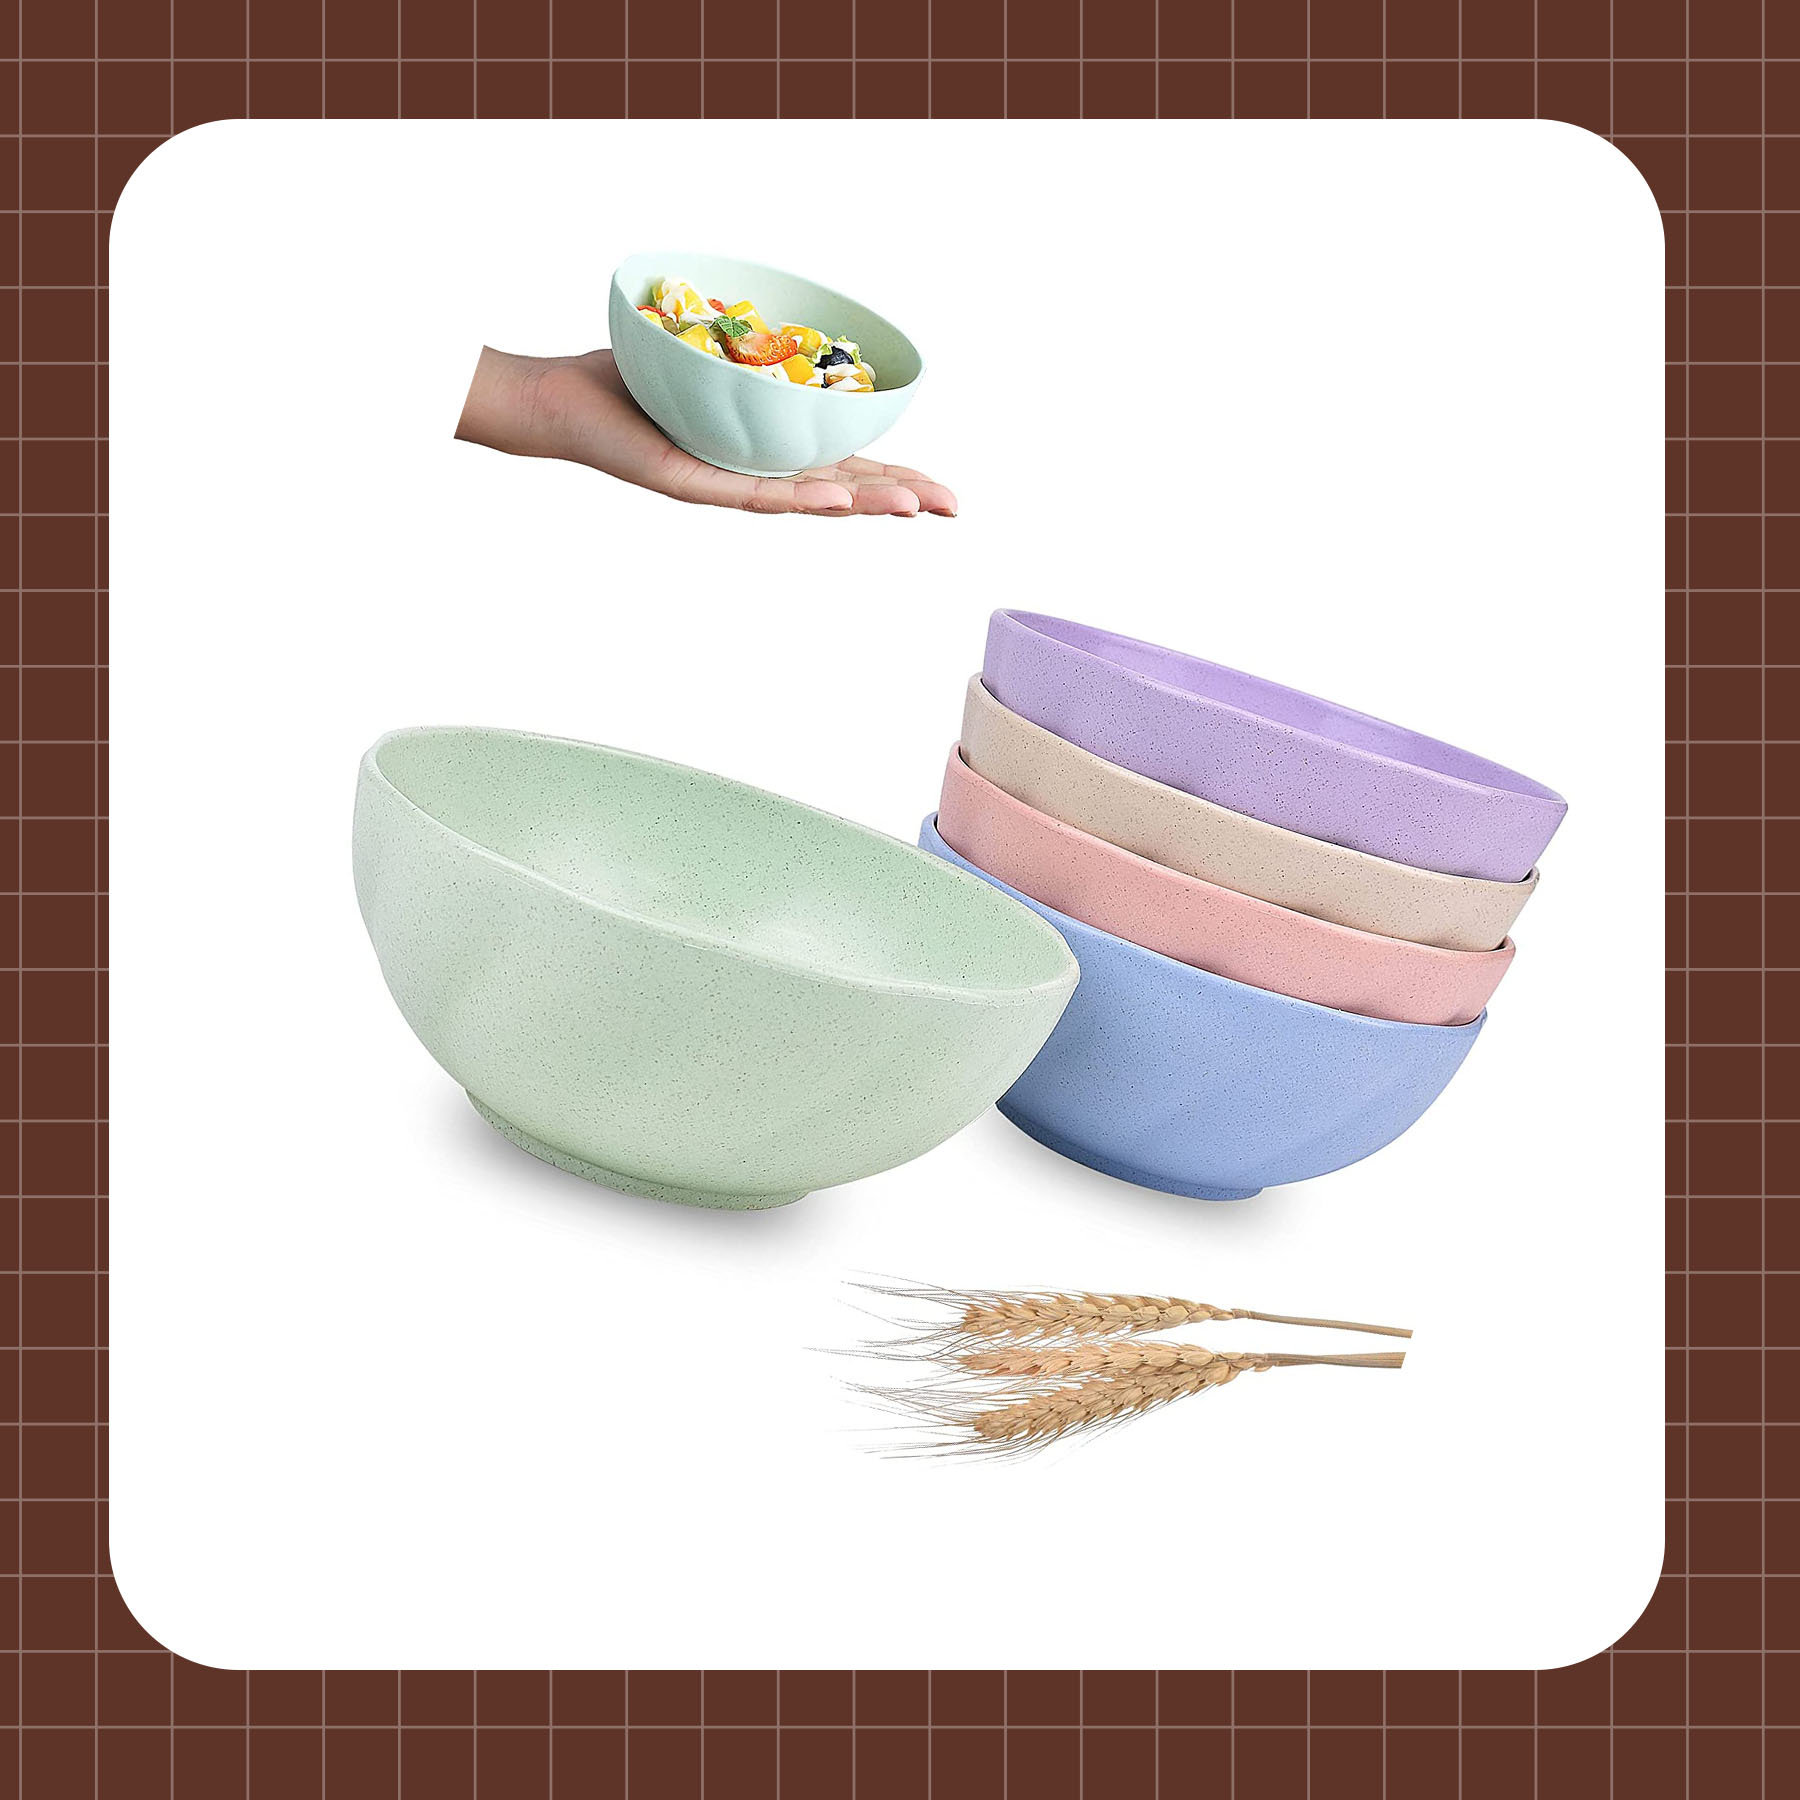 https://assets.wfcdn.com/im/91559785/compr-r85/2387/238730741/cereal-bowls-petal-shaped-18-oz-plastic-bowl-colorful-wheat-straw-fiber-lightweight-bowls-for-children-adult-dishwasher-and-microwave-safe-for-rice-soup-salad-noodles-bowls.jpg